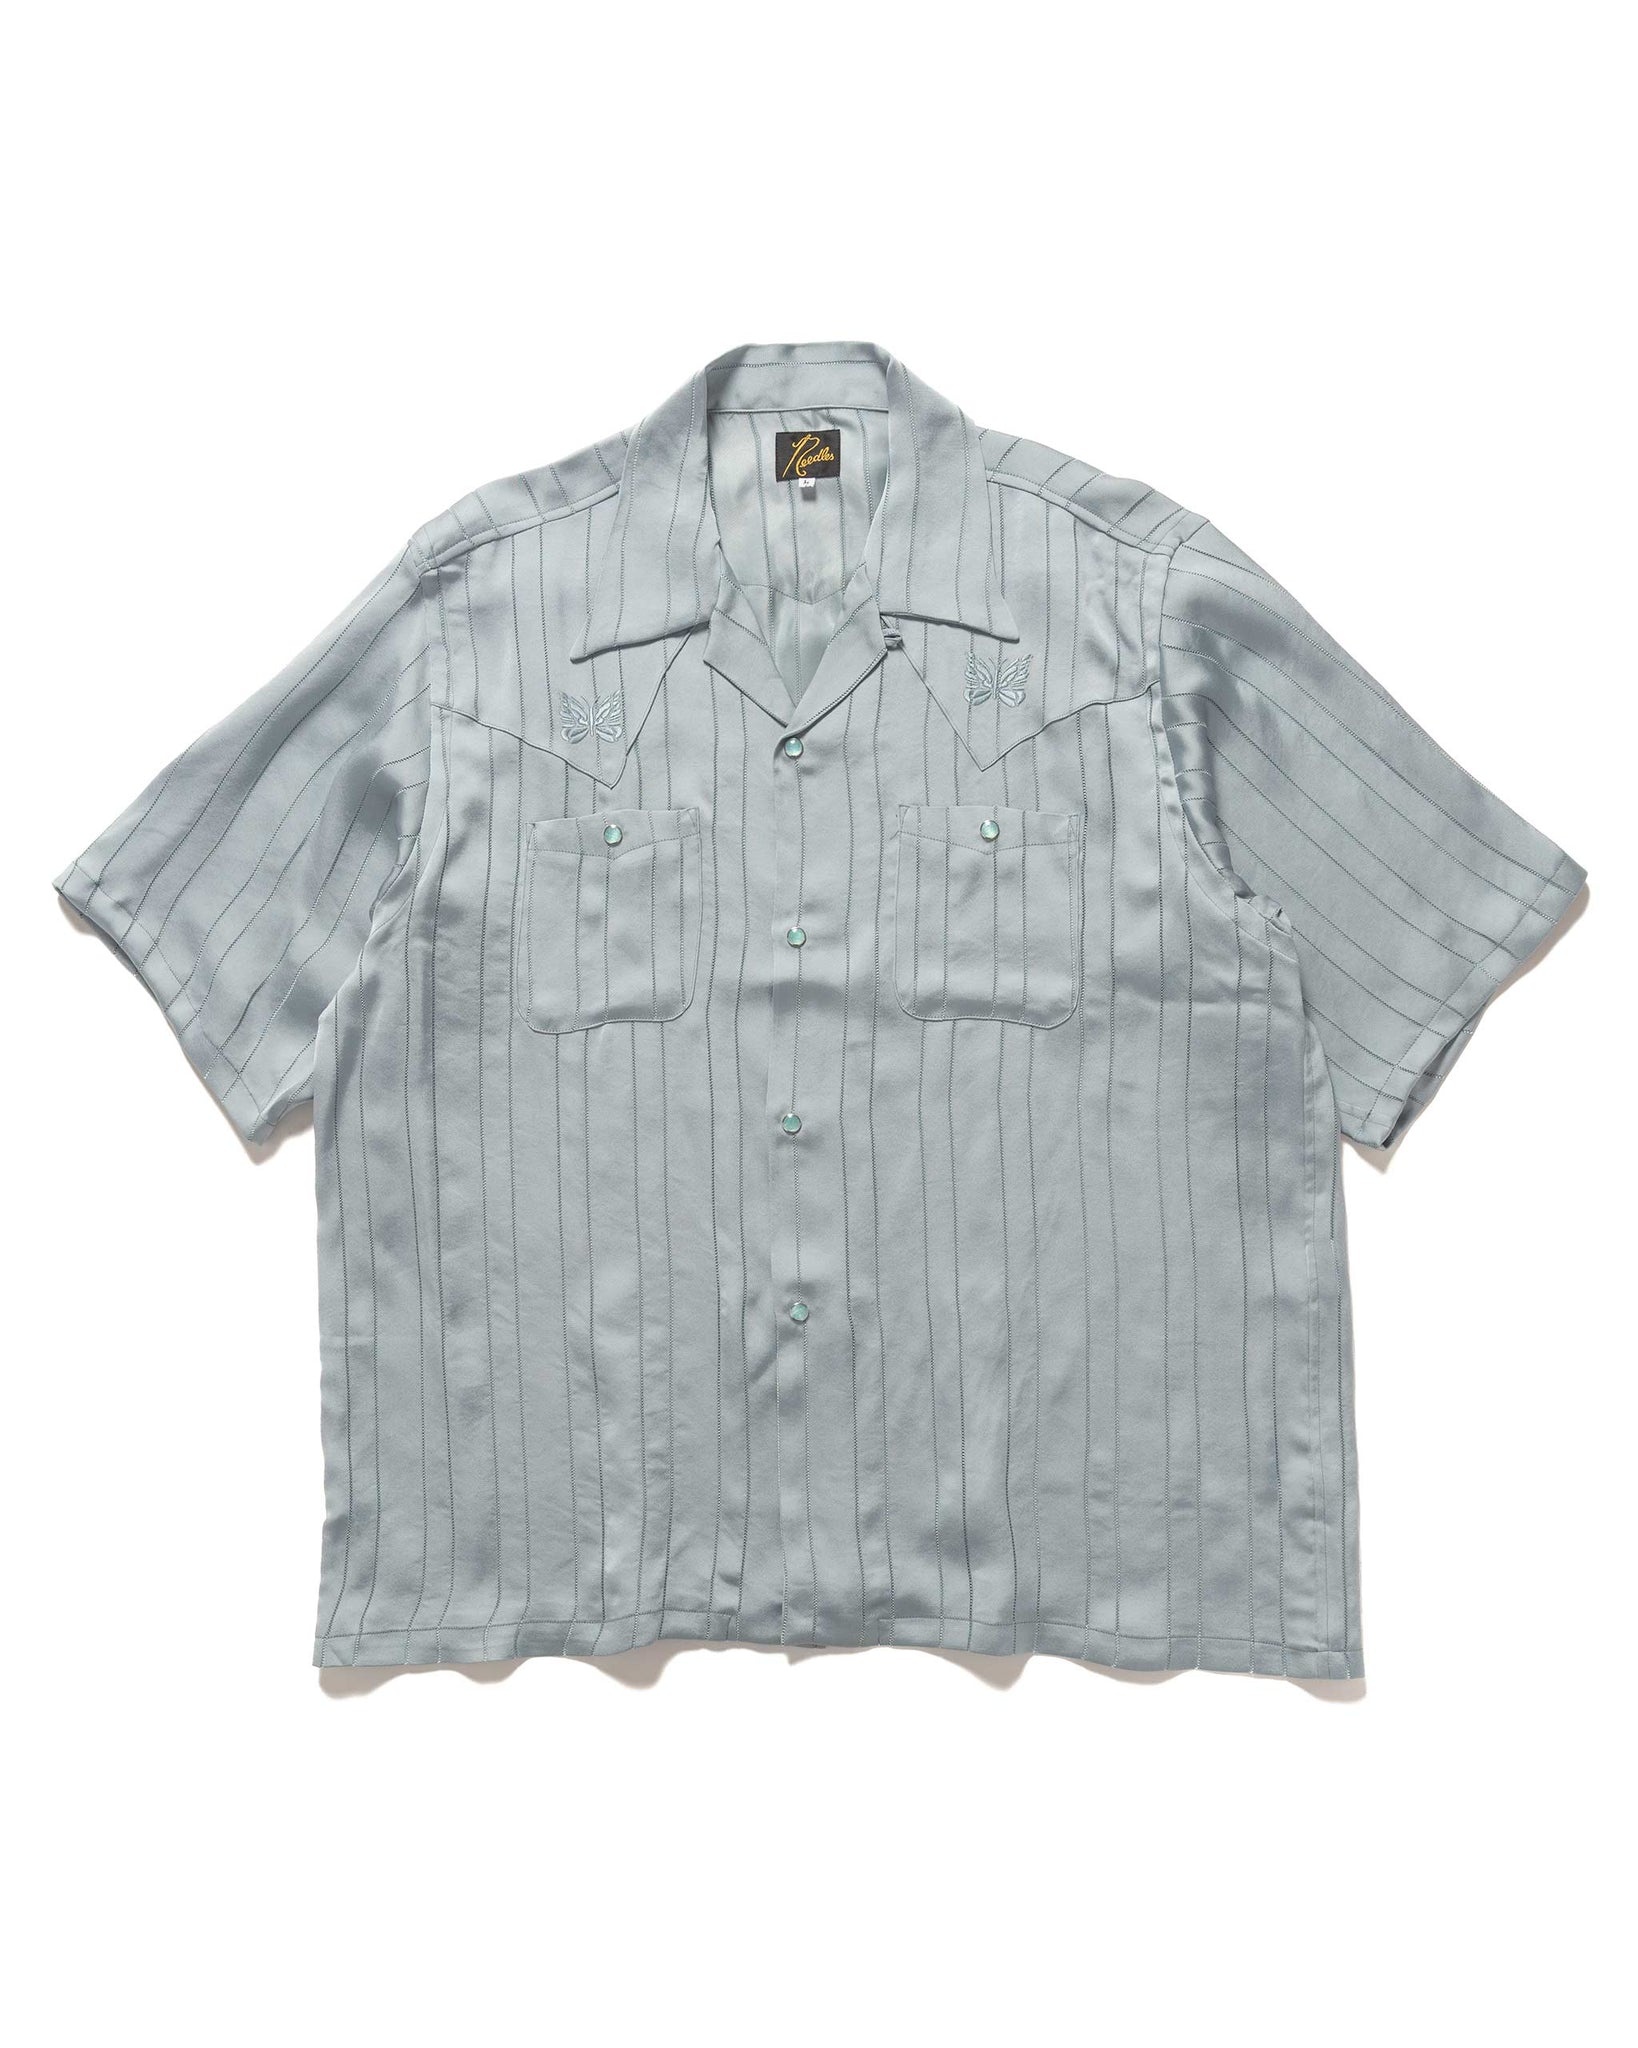 S/S Cowboy One-Up Shirt - TA/CU/PE Georgette Blue - 1